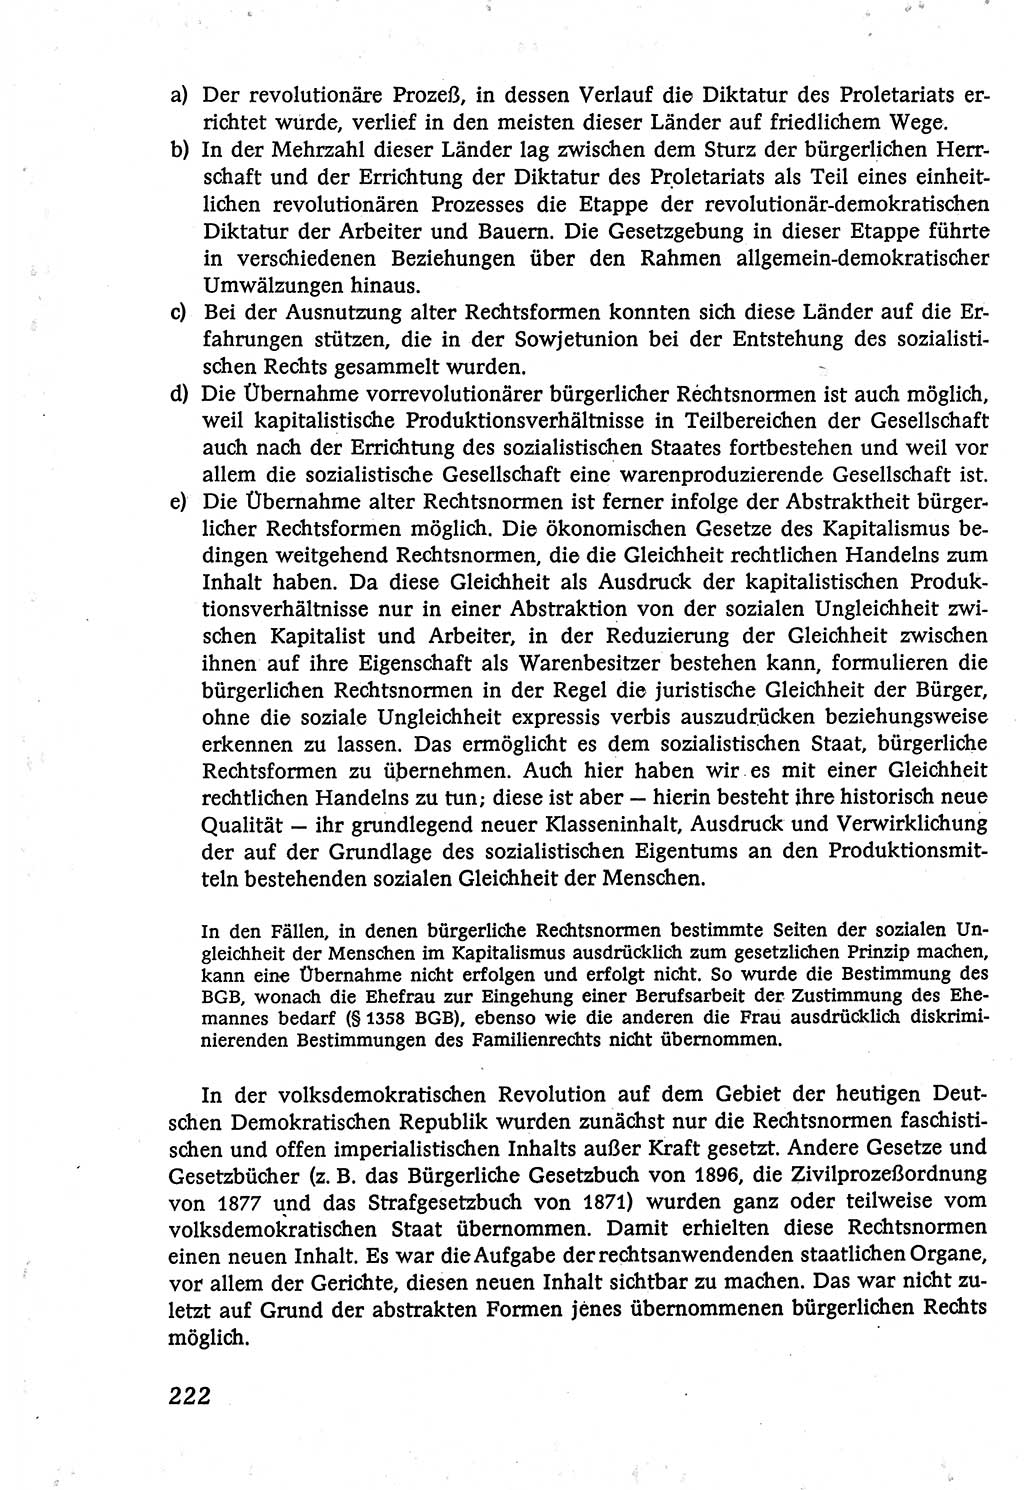 Marxistisch-leninistische (ML) Staats- und Rechtstheorie [Deutsche Demokratische Republik (DDR)], Lehrbuch 1980, Seite 222 (ML St.-R.-Th. DDR Lb. 1980, S. 222)